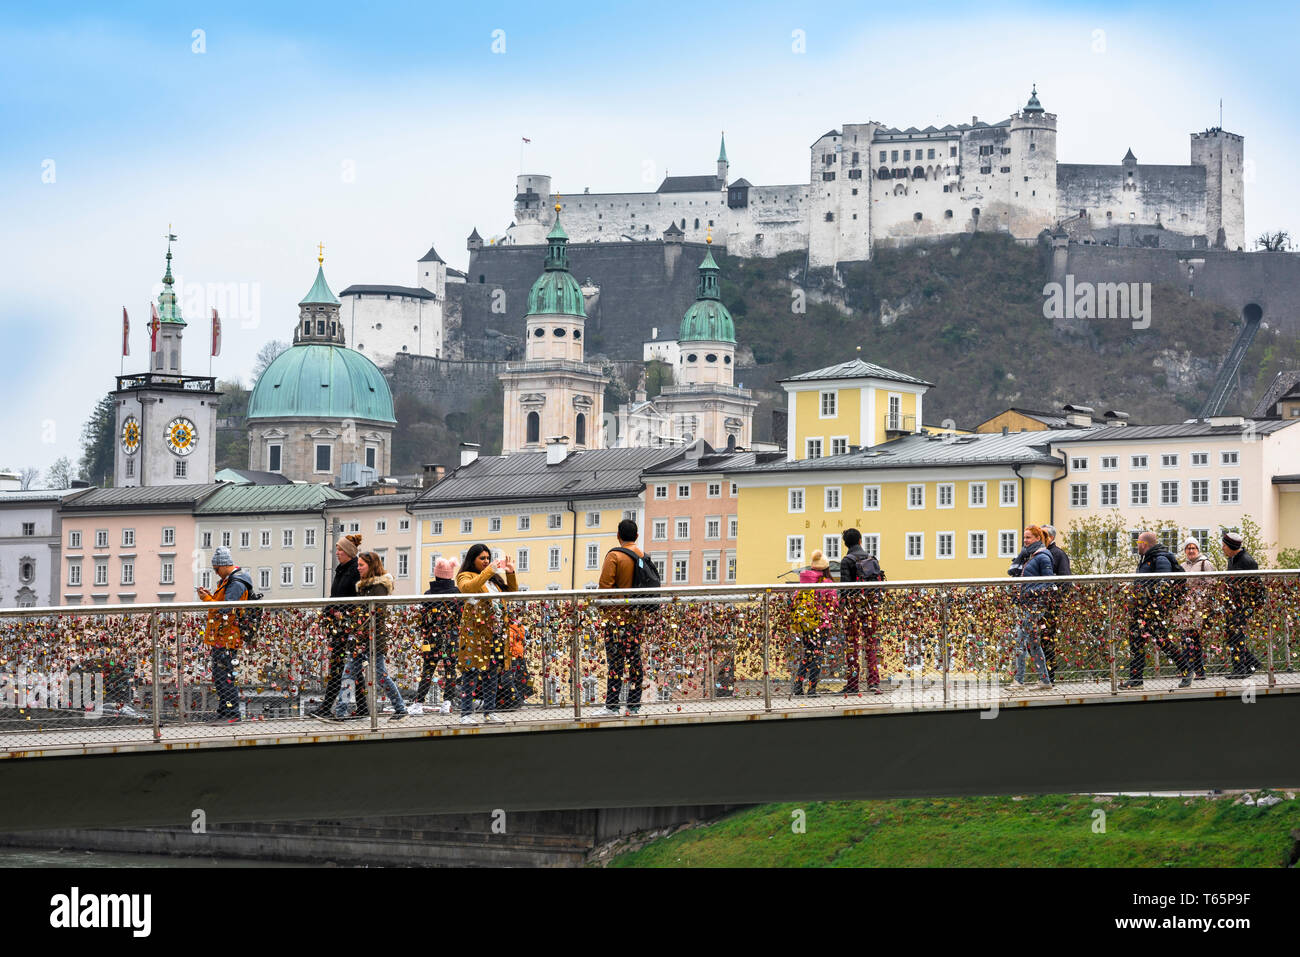 Makartsteg Salisburgo, vista dei turisti sul ponte Makartsteg guardando l'architettura della vecchia barocca e la sua collina del castello medievale. Foto Stock